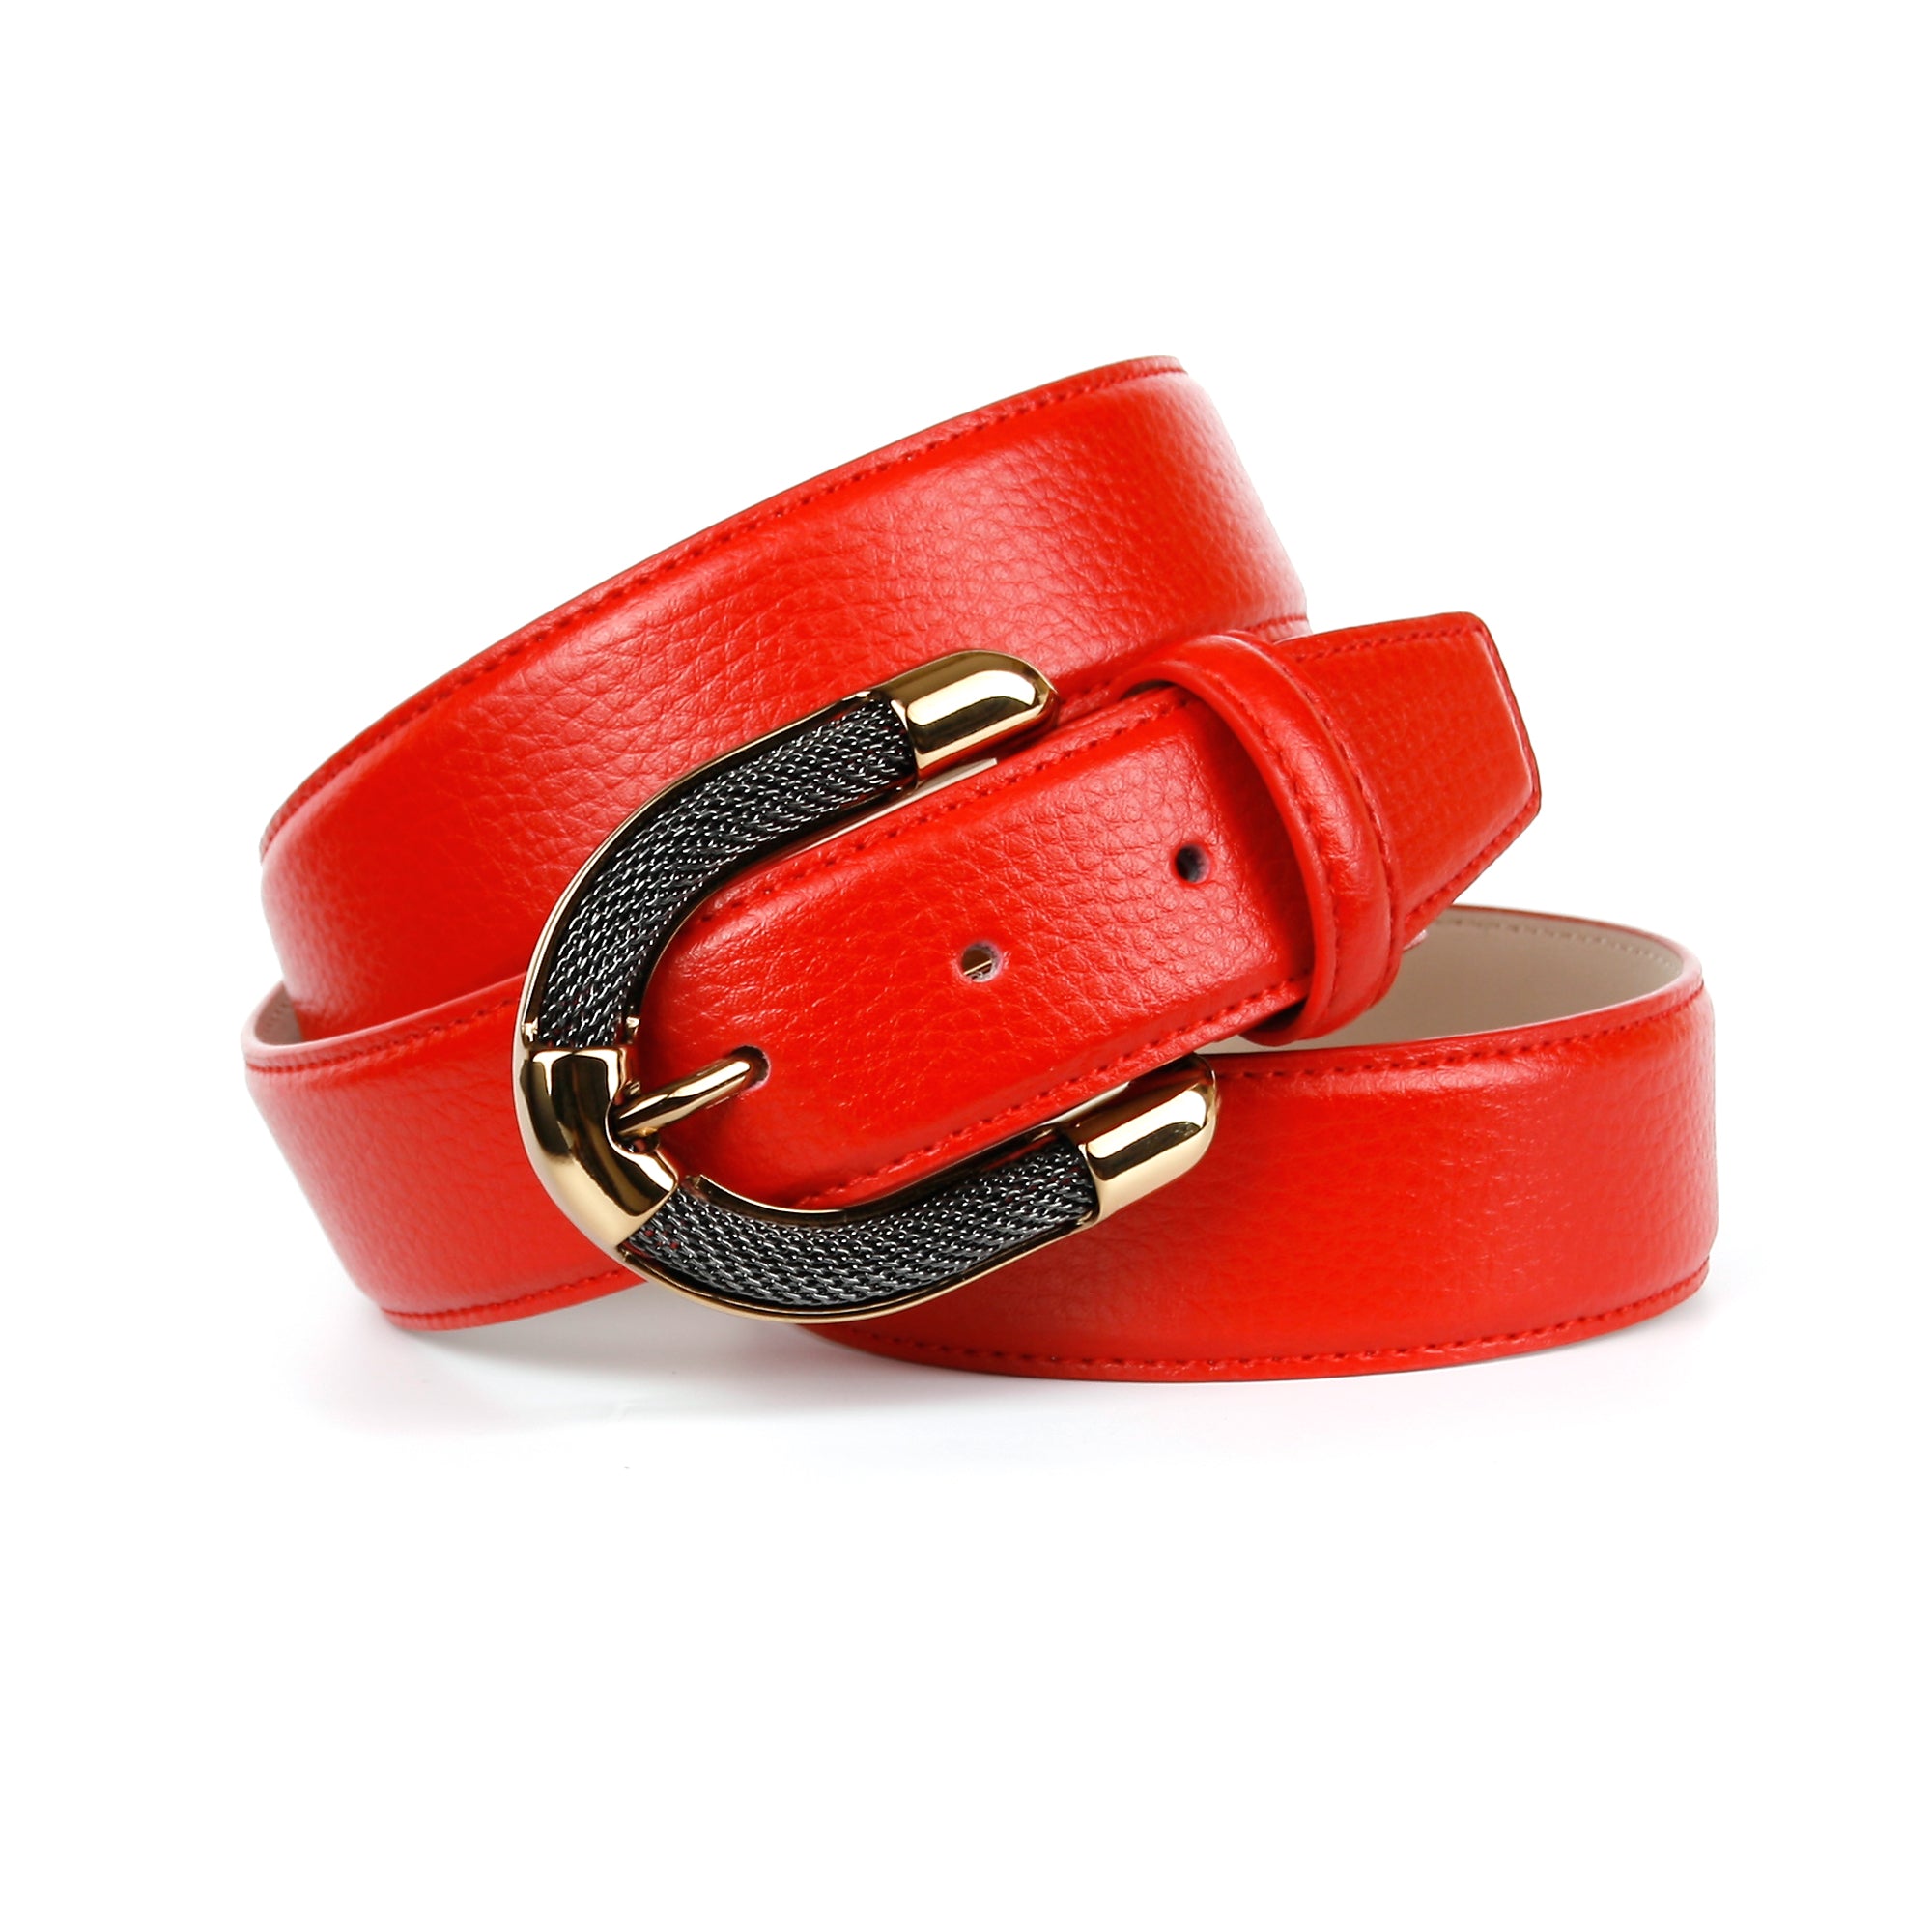 Femininer Ledergürtel in aufwendiger Schmuck-Schließe mit – anthonicrown Rot